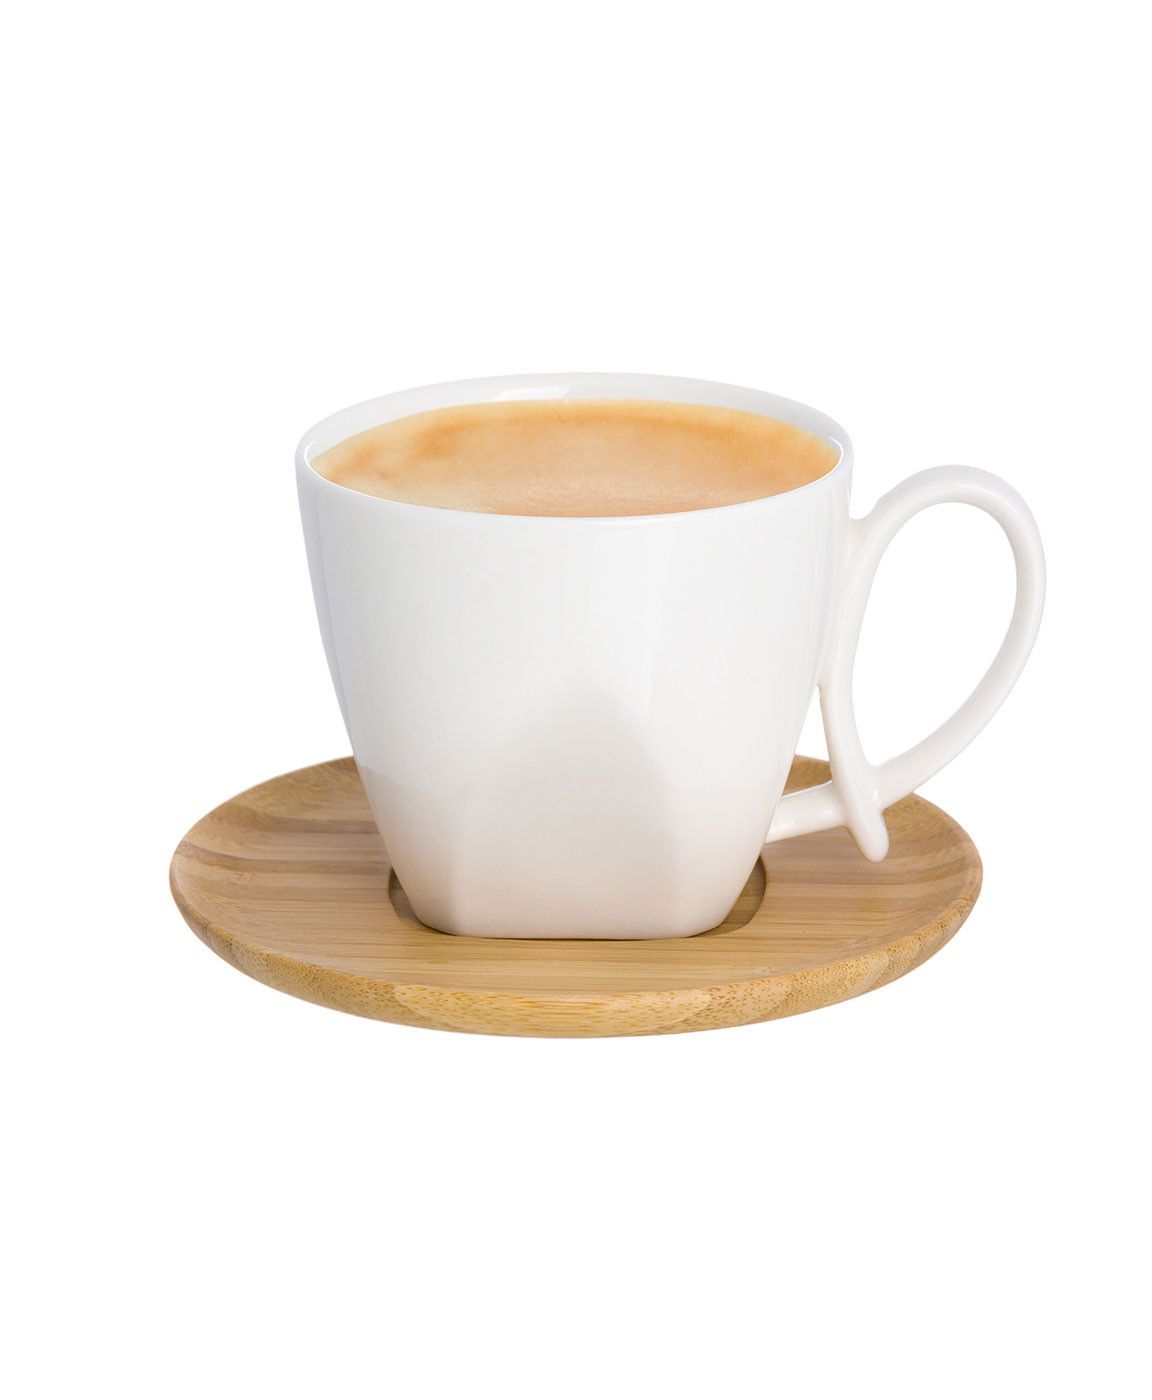 Чашка для капучино и кофе латте "Белая метелица" 200 мл 11*7,5*7 см, ручка - петля, с деревянной подставкой, диаметр подставки - 12 см